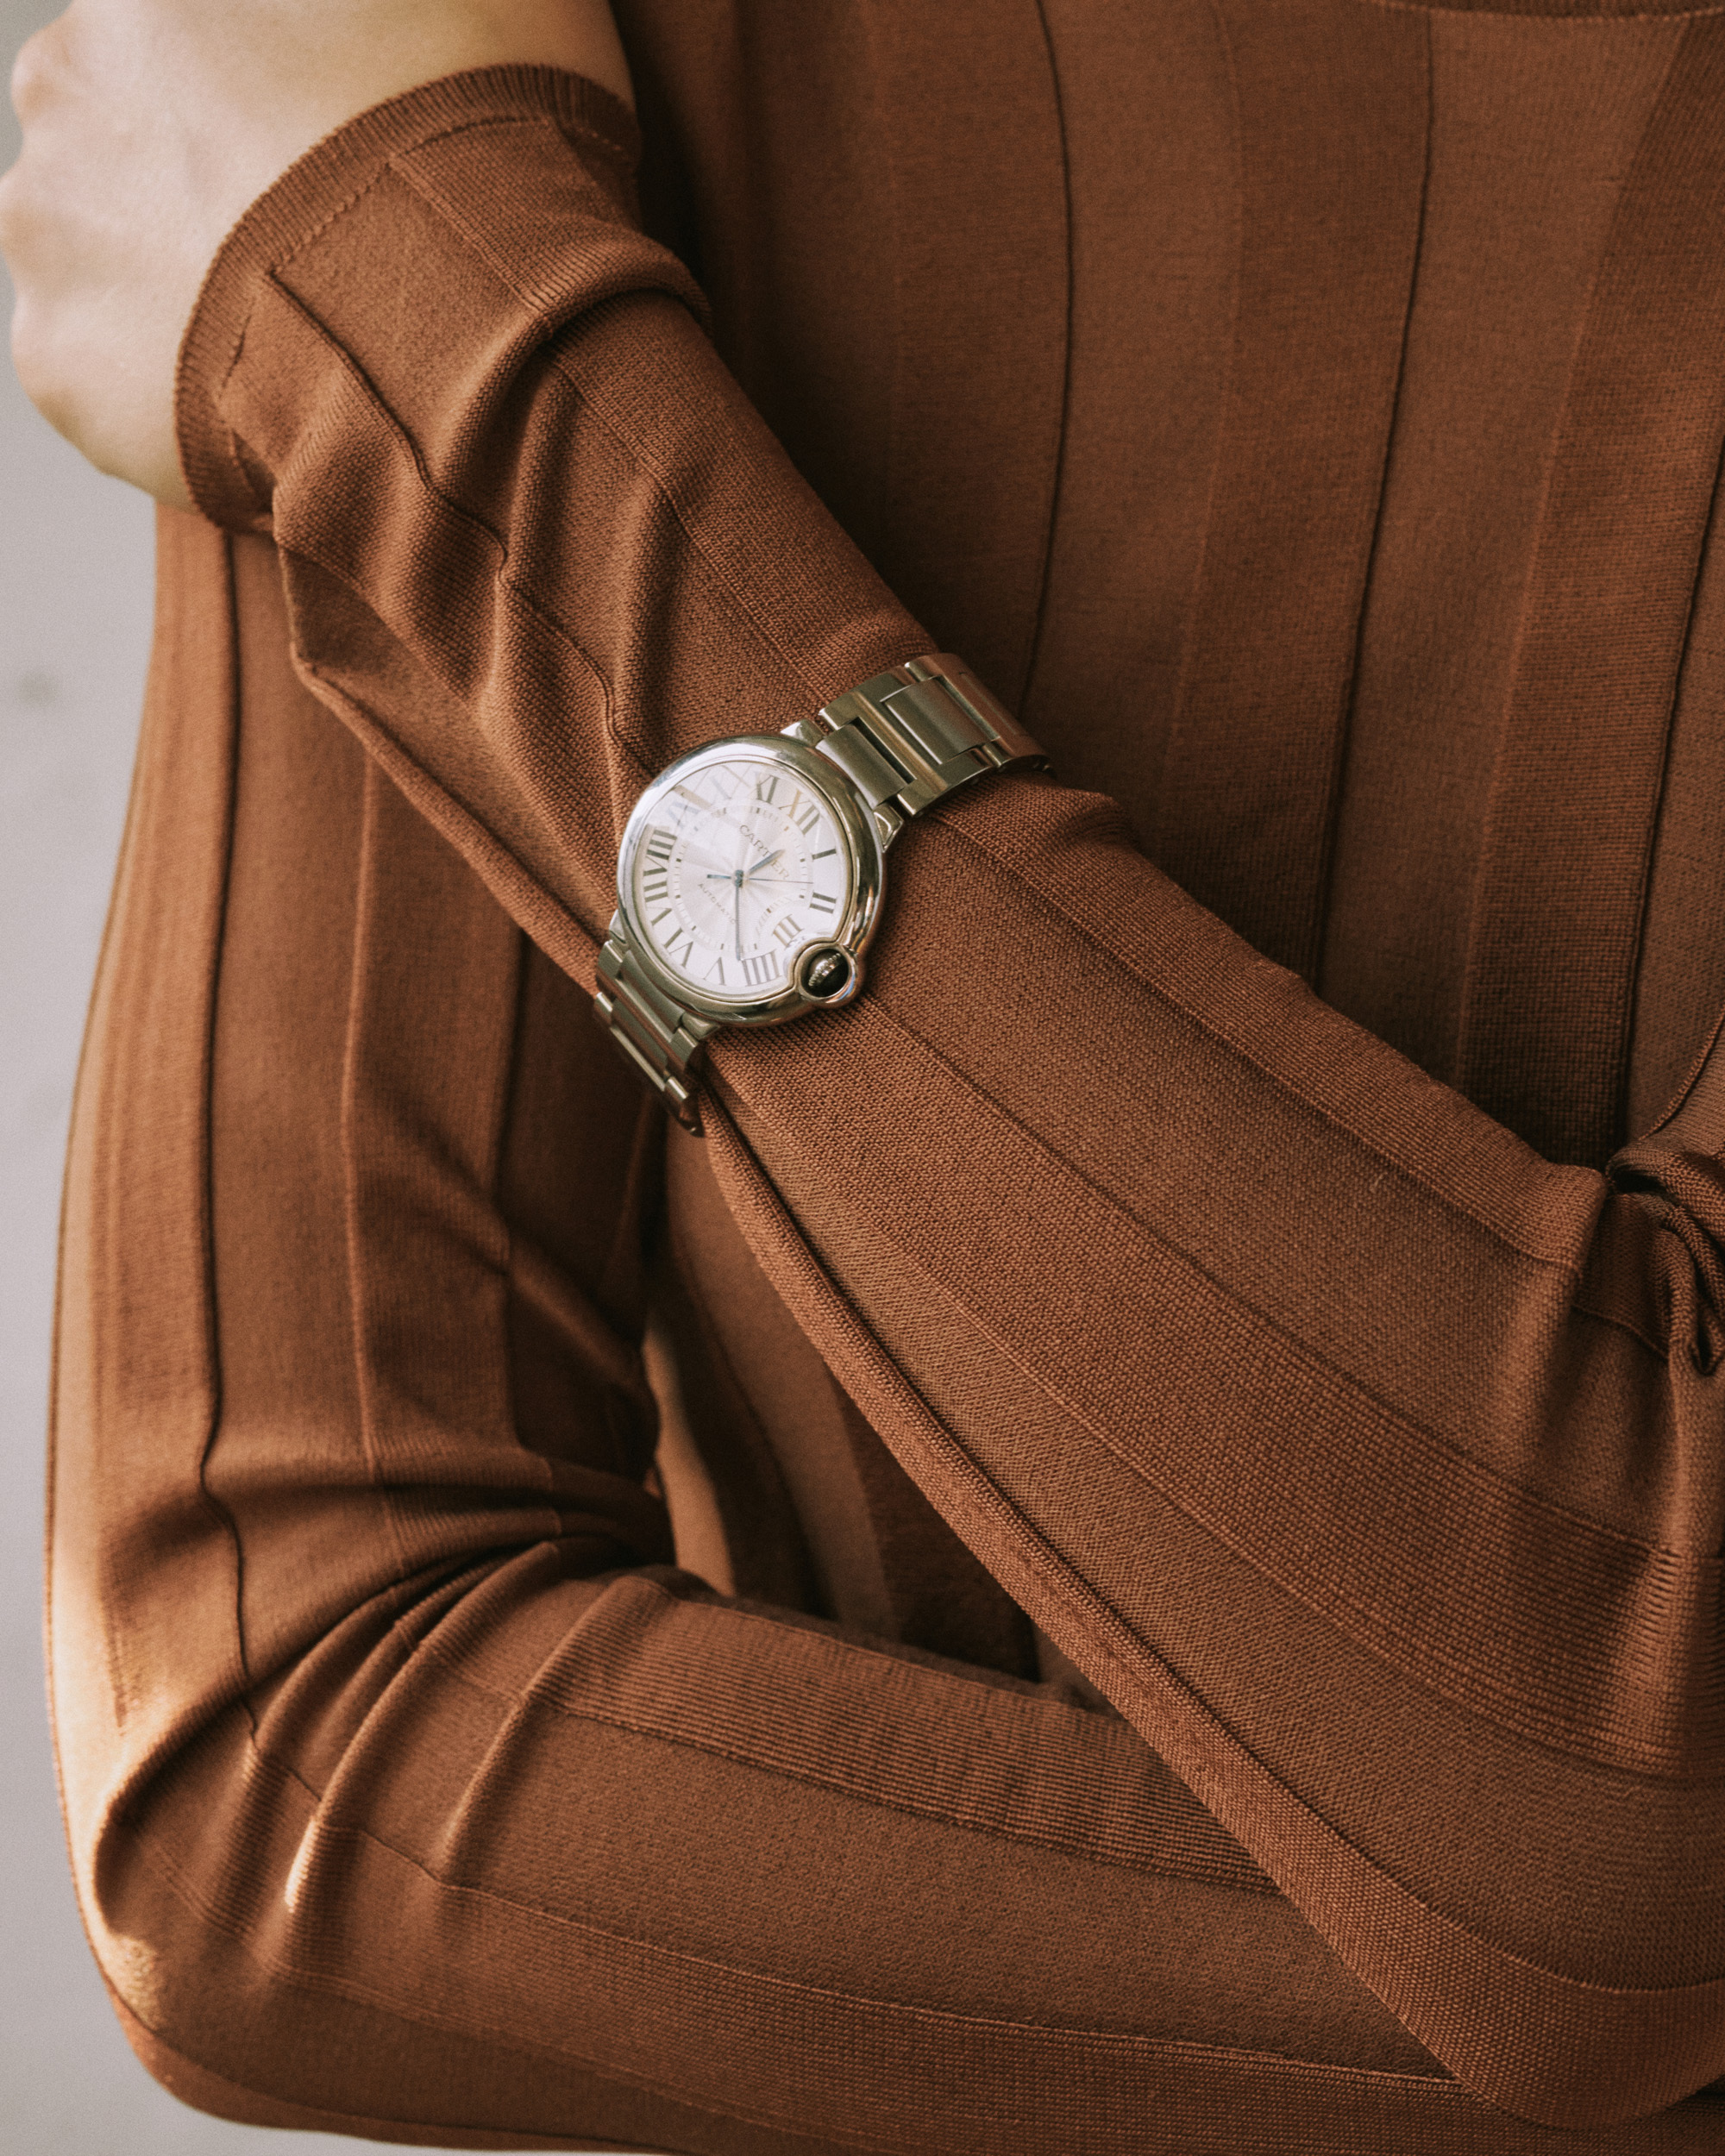 Cartier Watch: The finest watch for women 